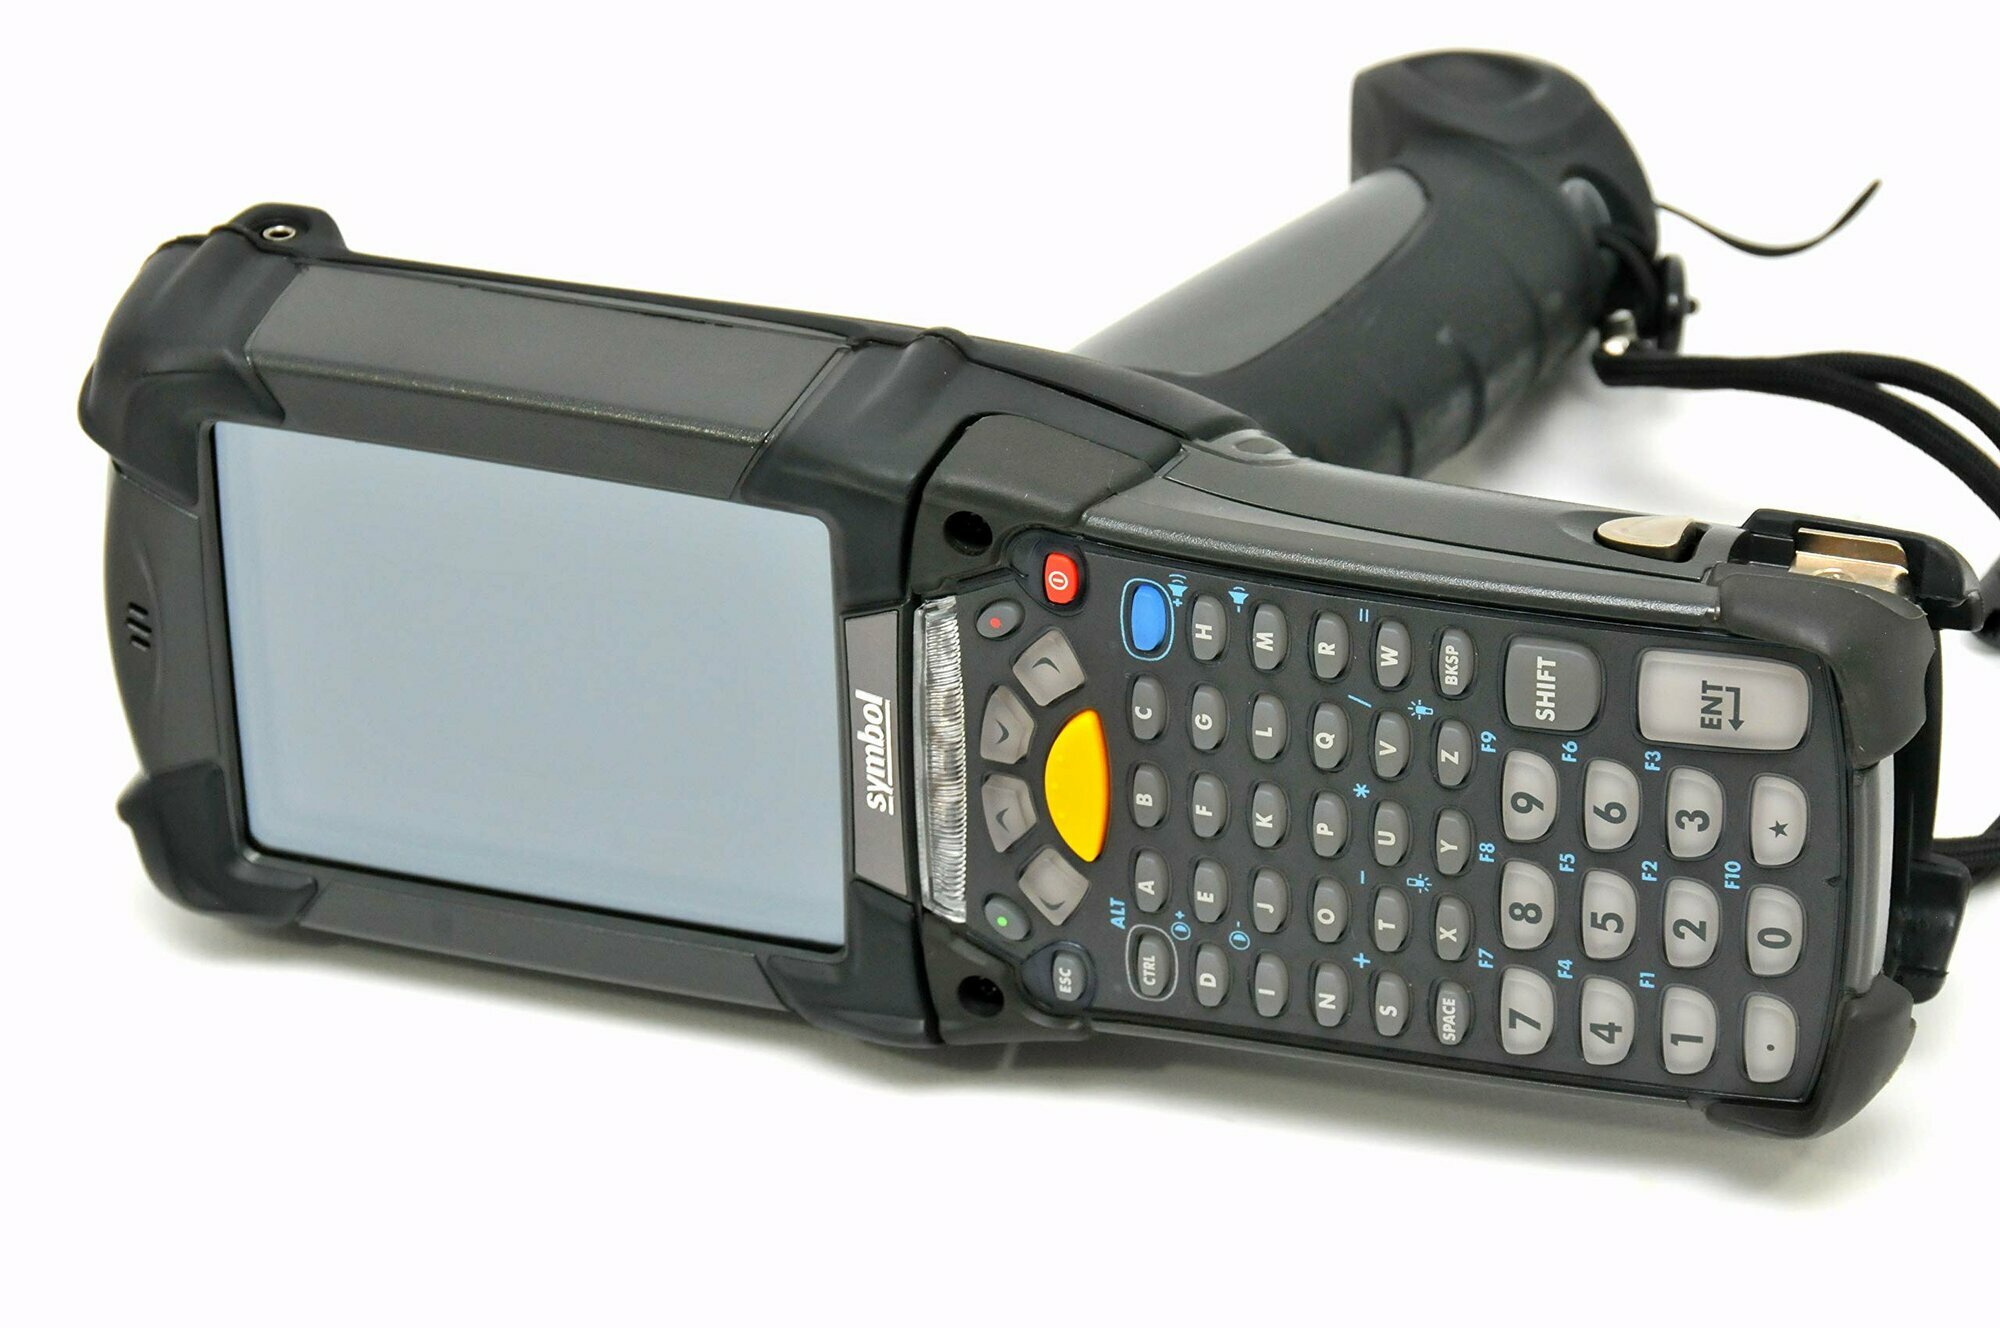 Распродажа!Терминал Motorola MC92N0-G90SXEYA5WR (GUN;ABGN;LRI;512MB/2GB;53KY;CE7; BT)